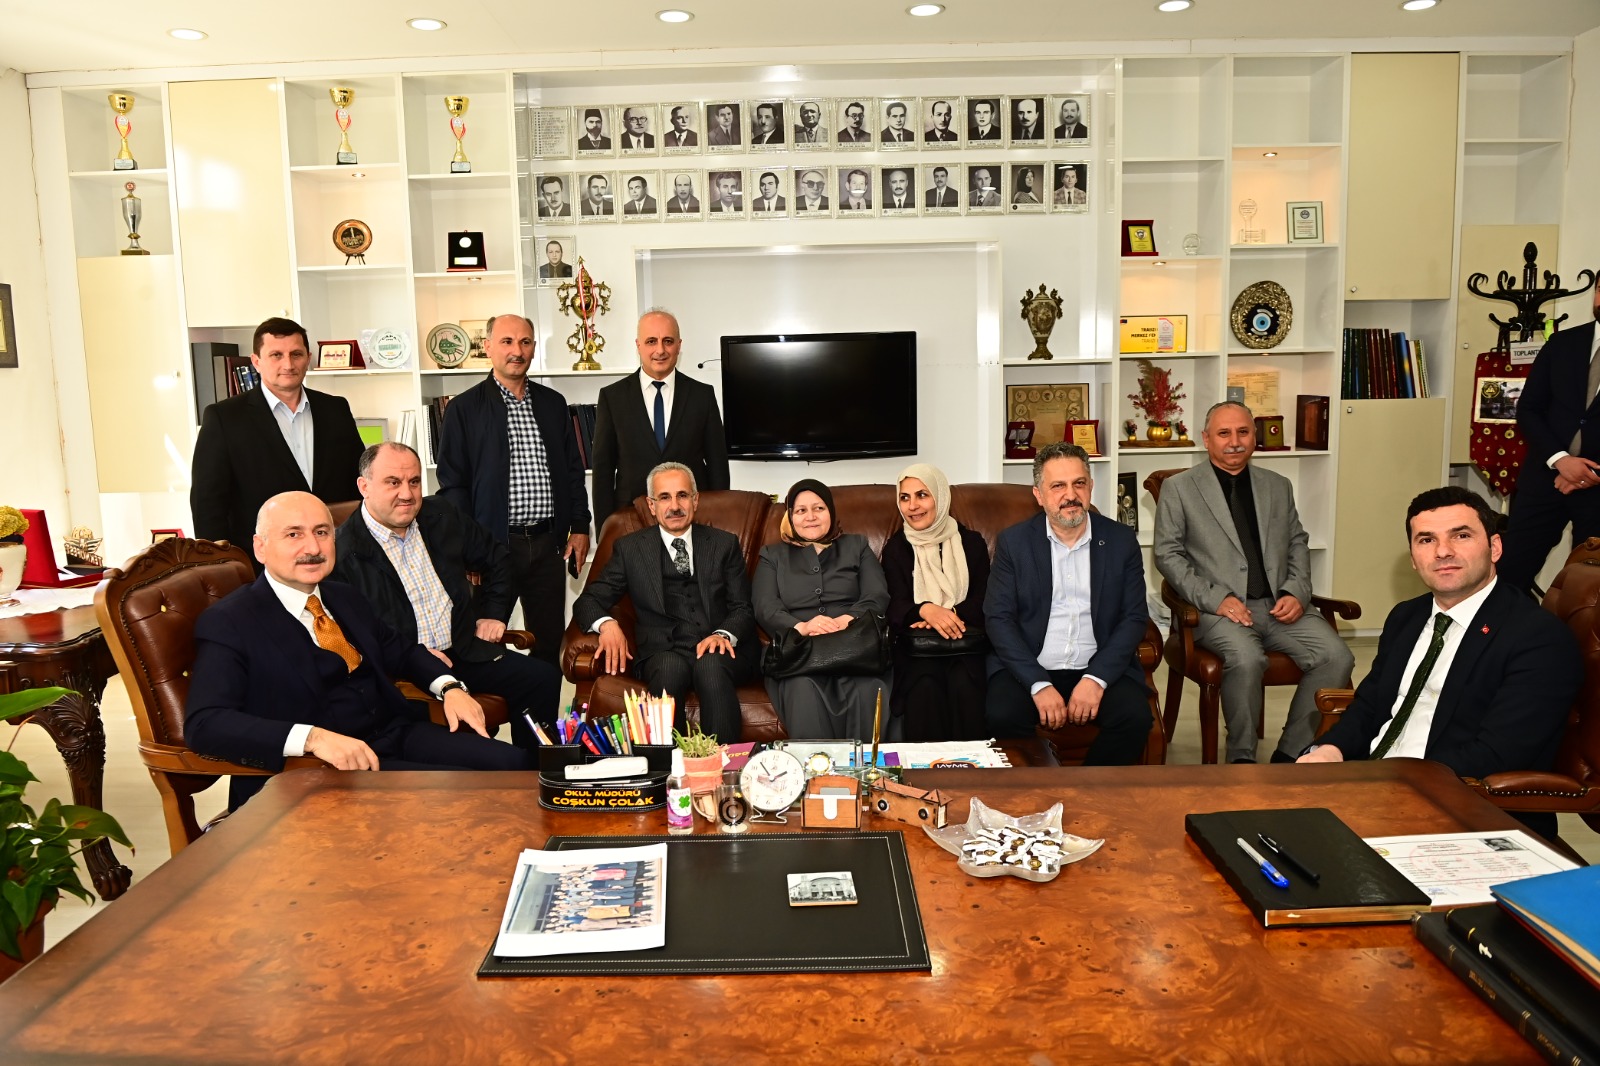 Bakan Karaismailoğlu, Trabzon Lisesi'nde sınıf arkadaşlarıyla buluştu